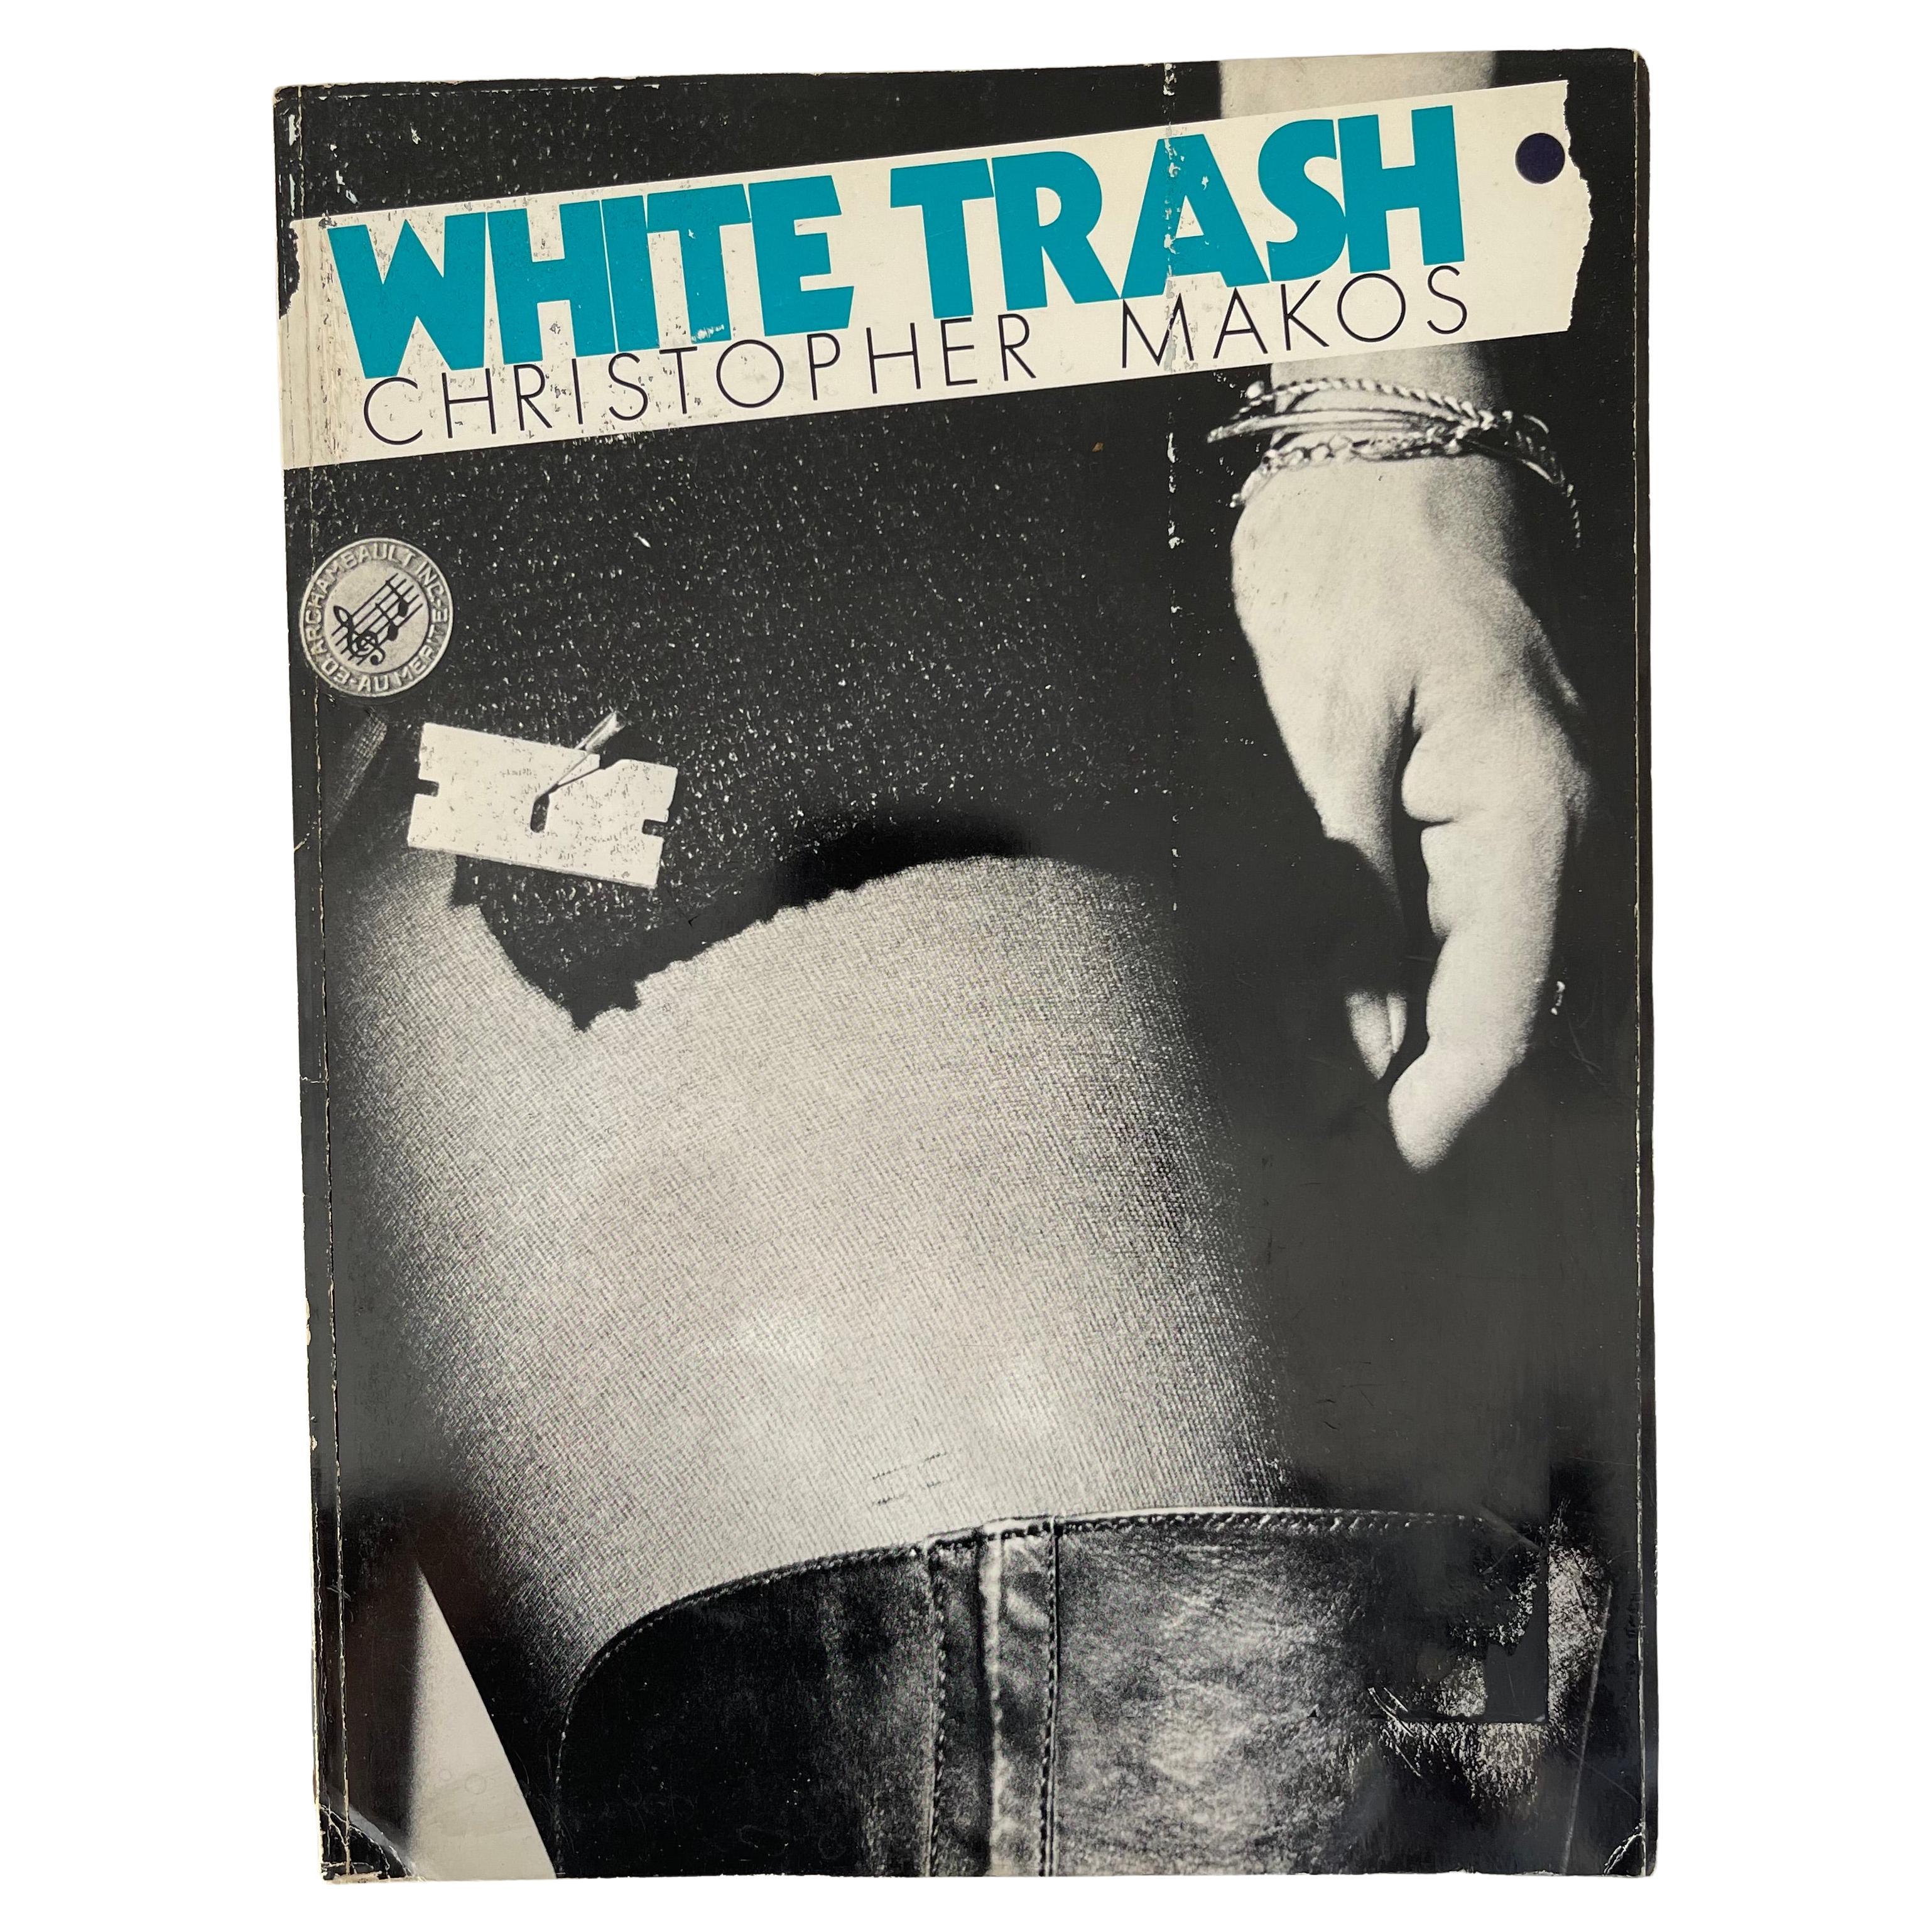 Édition 1ère édition de Christopher Makos, Blanc Trash 1977